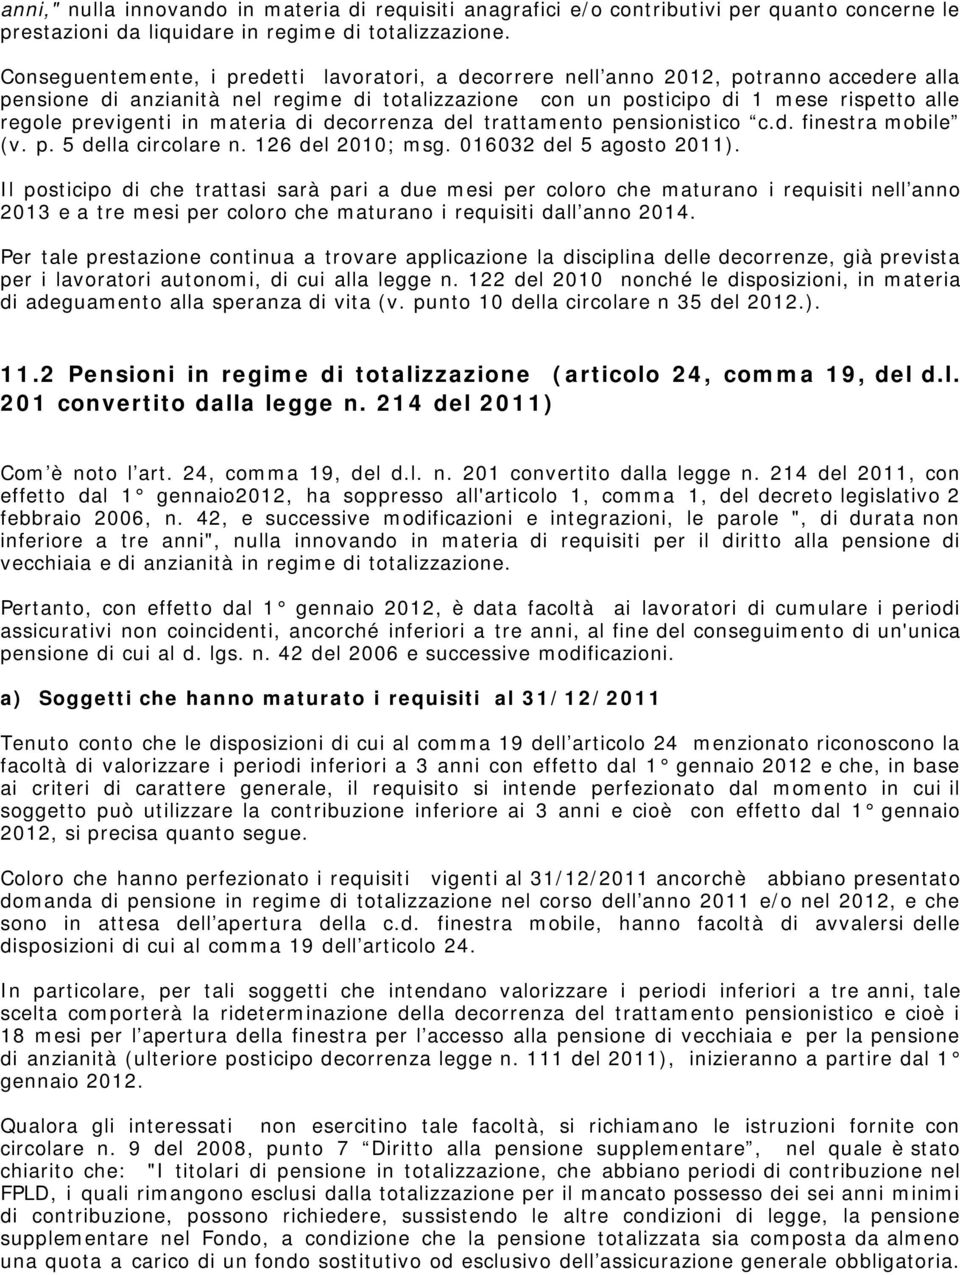 previgenti in materia di decorrenza del trattamento pensionistico c.d. finestra mobile (v. p. 5 della circolare n. 126 del 2010; msg. 016032 del 5 agosto 2011).